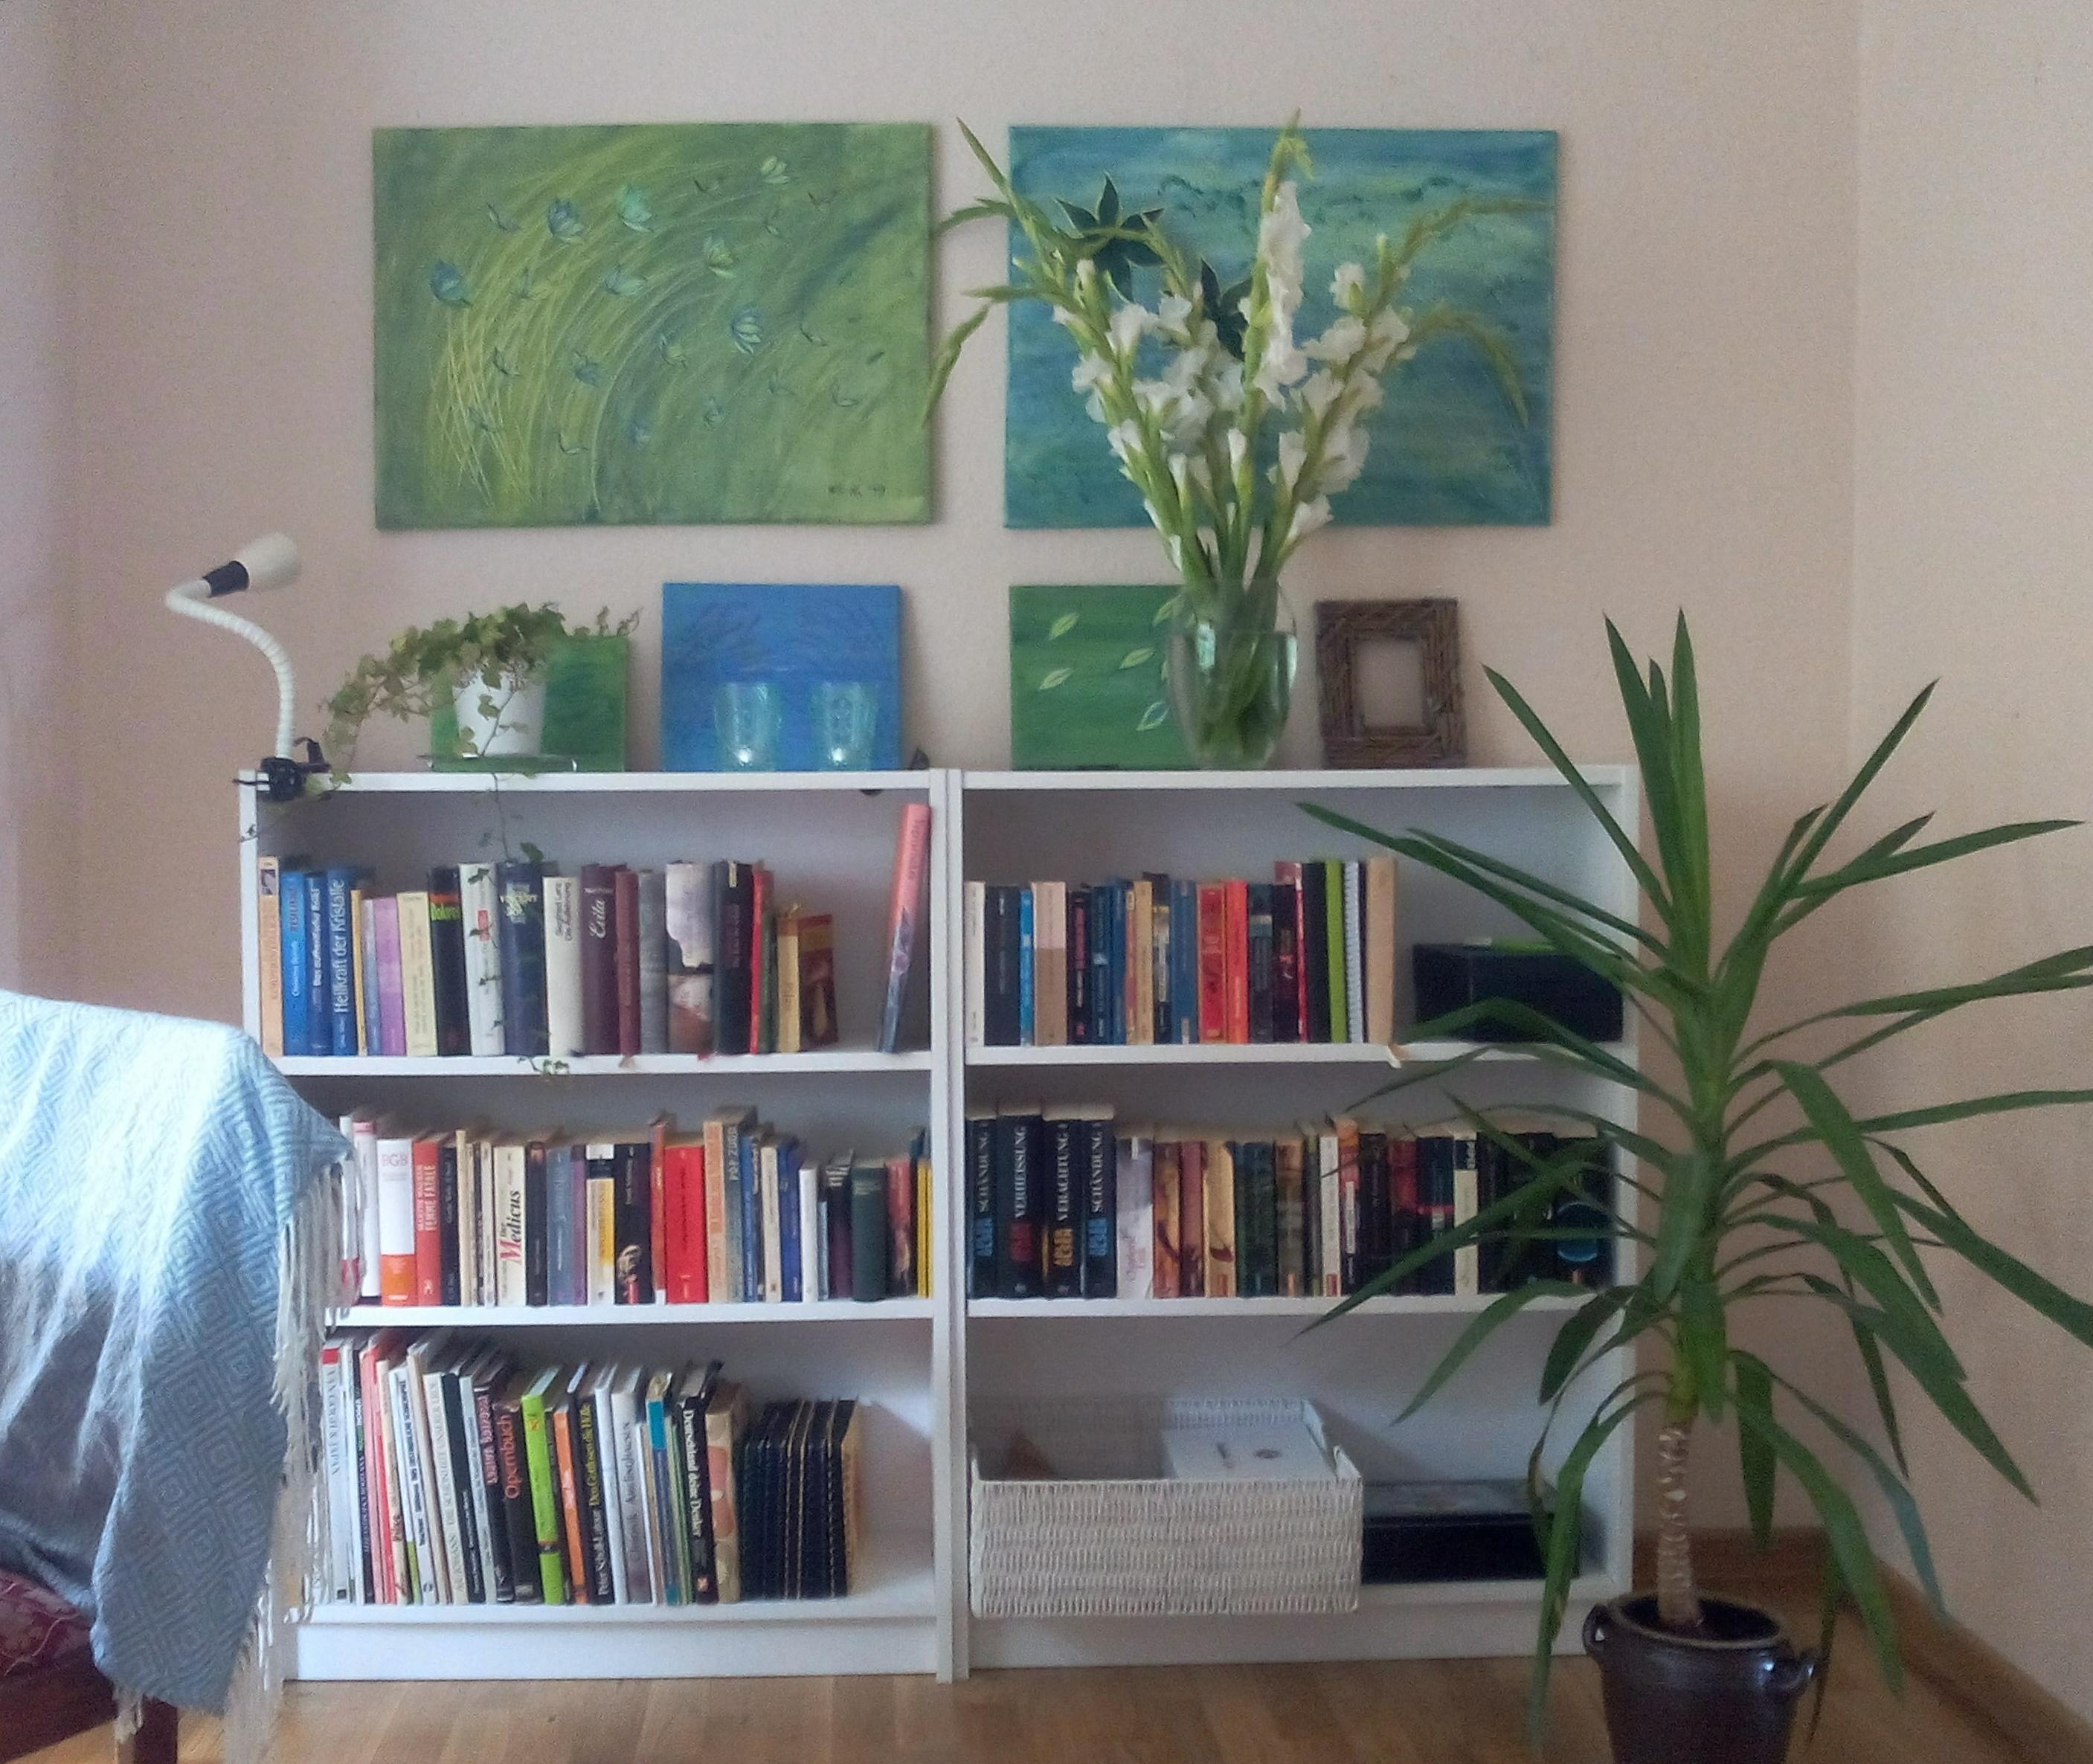 Sommerwand neu gestaltet. Zwei neue Regale, ein paar Bilder gemalt, etwas Deko und fertig ist das neue Wohngefühl.